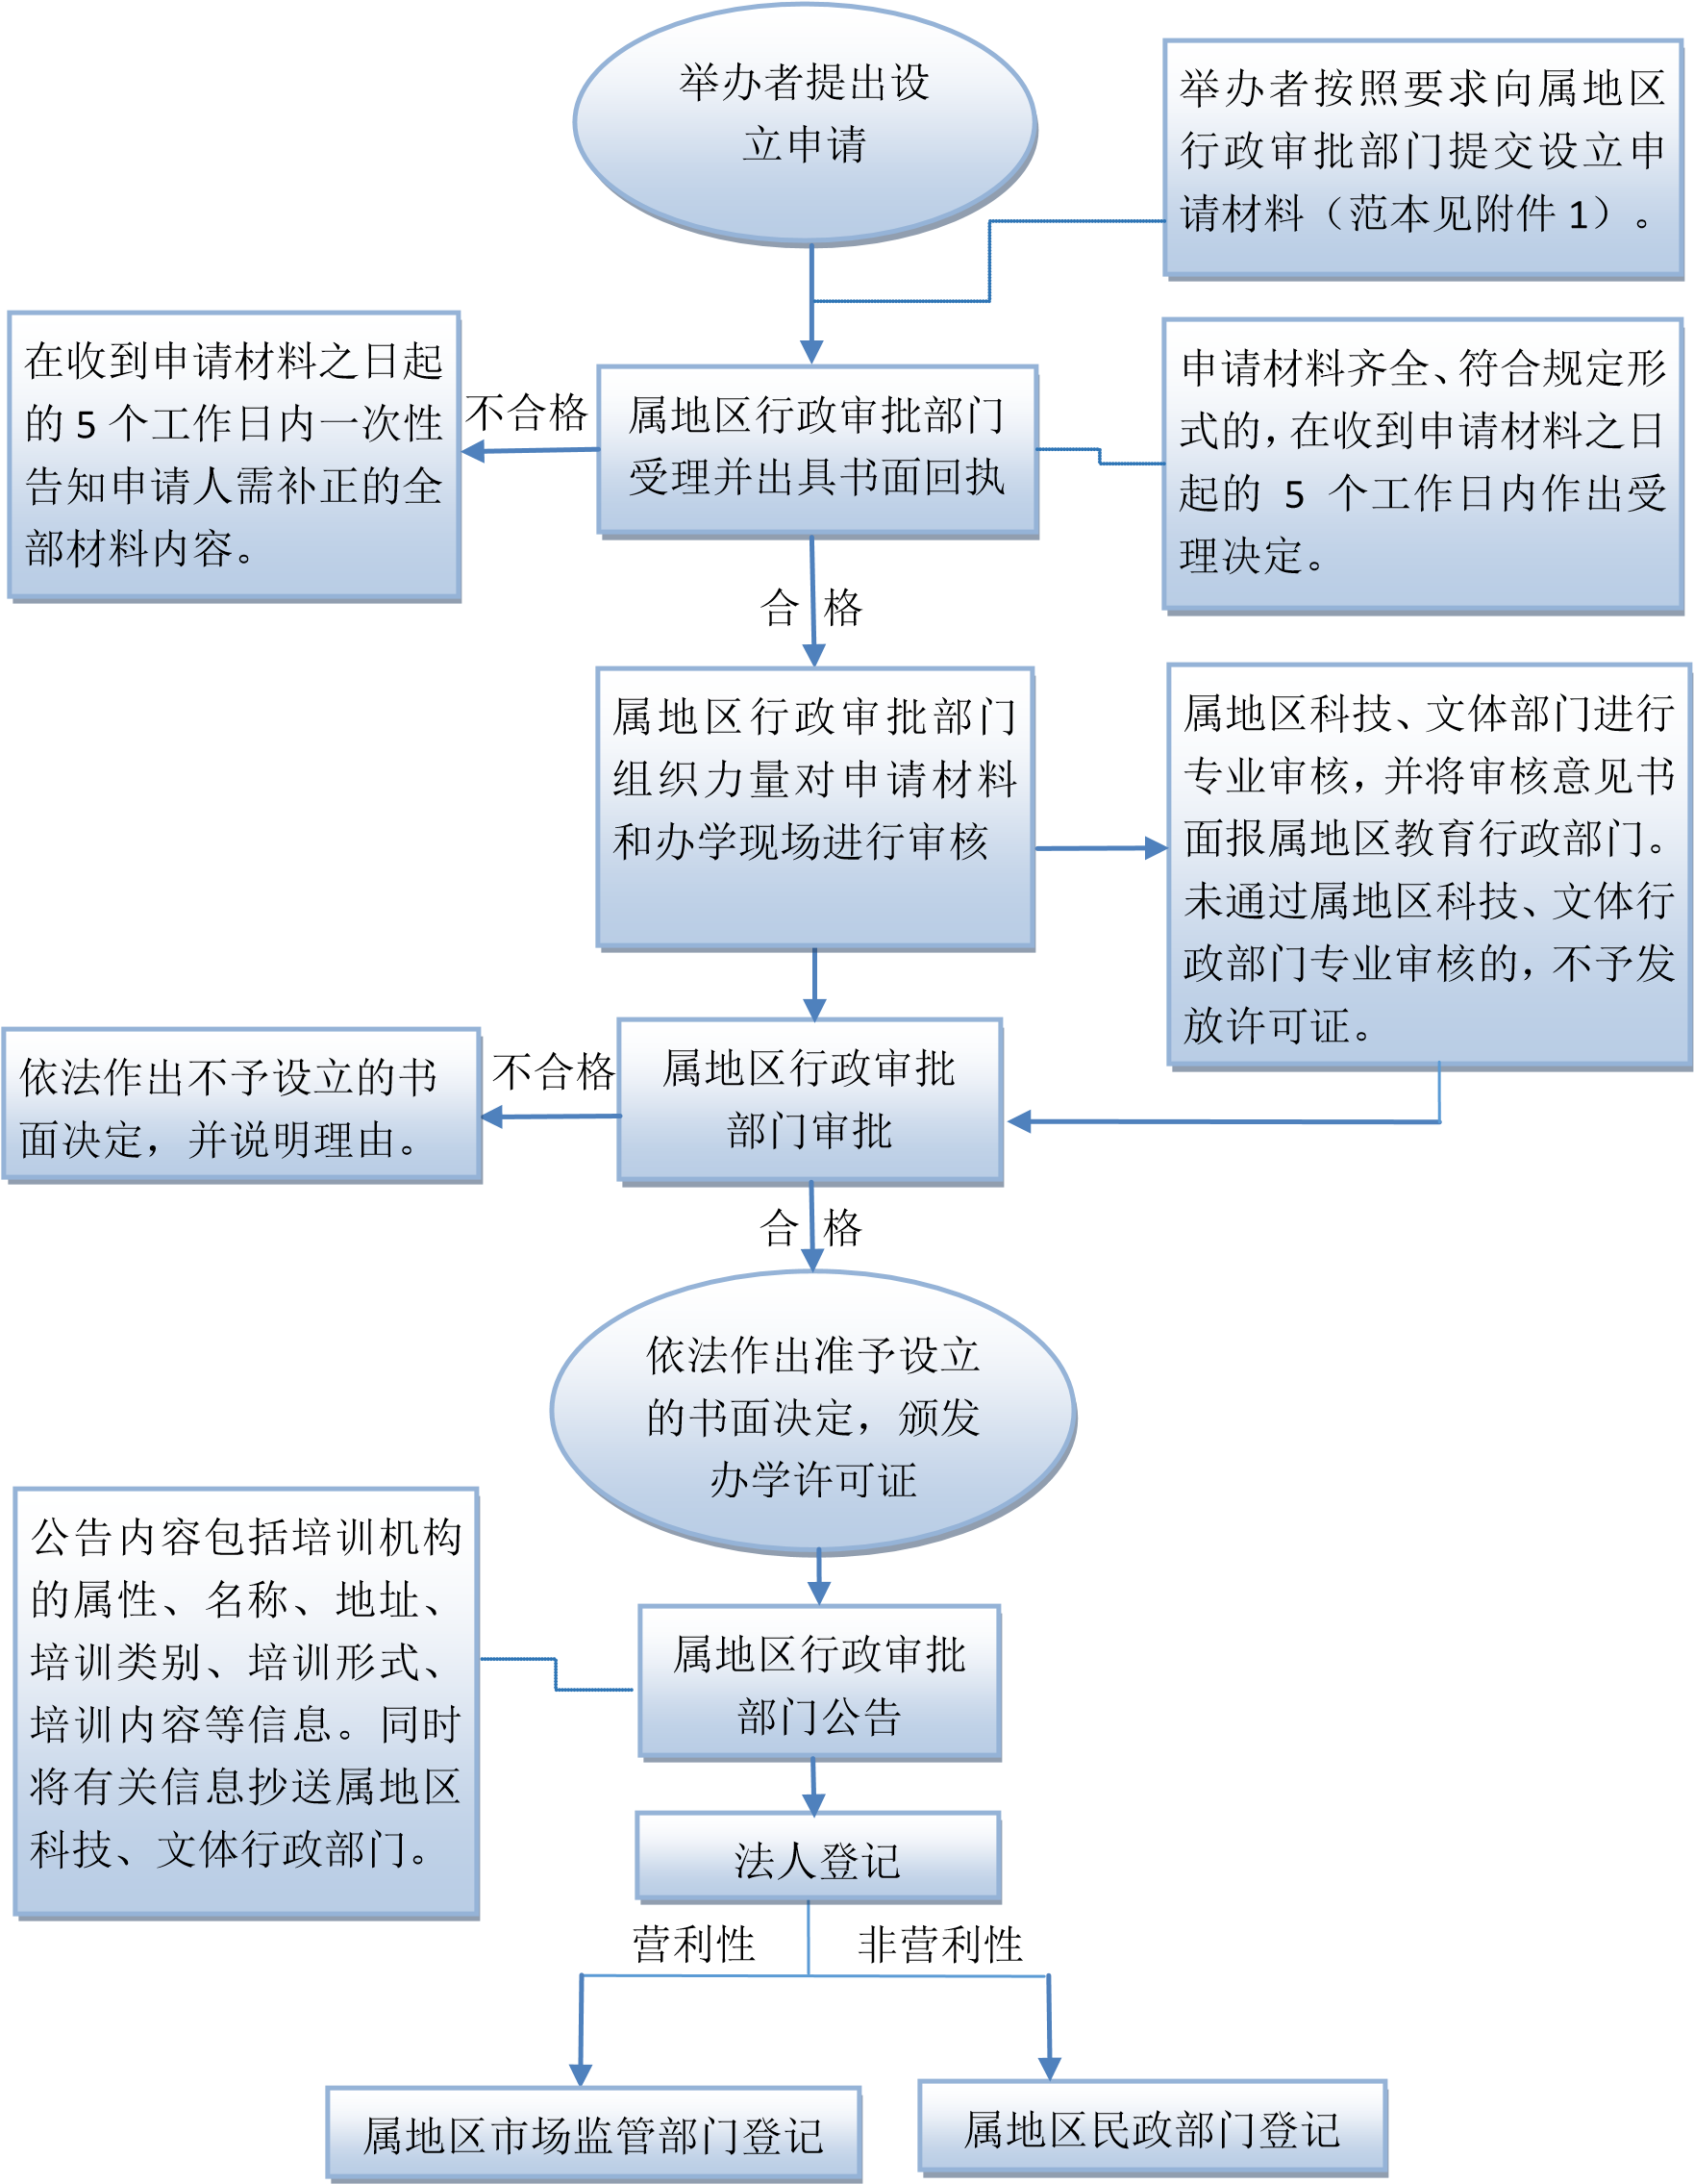 深圳市非学科类校外培训机构办学许可证审批流程图 